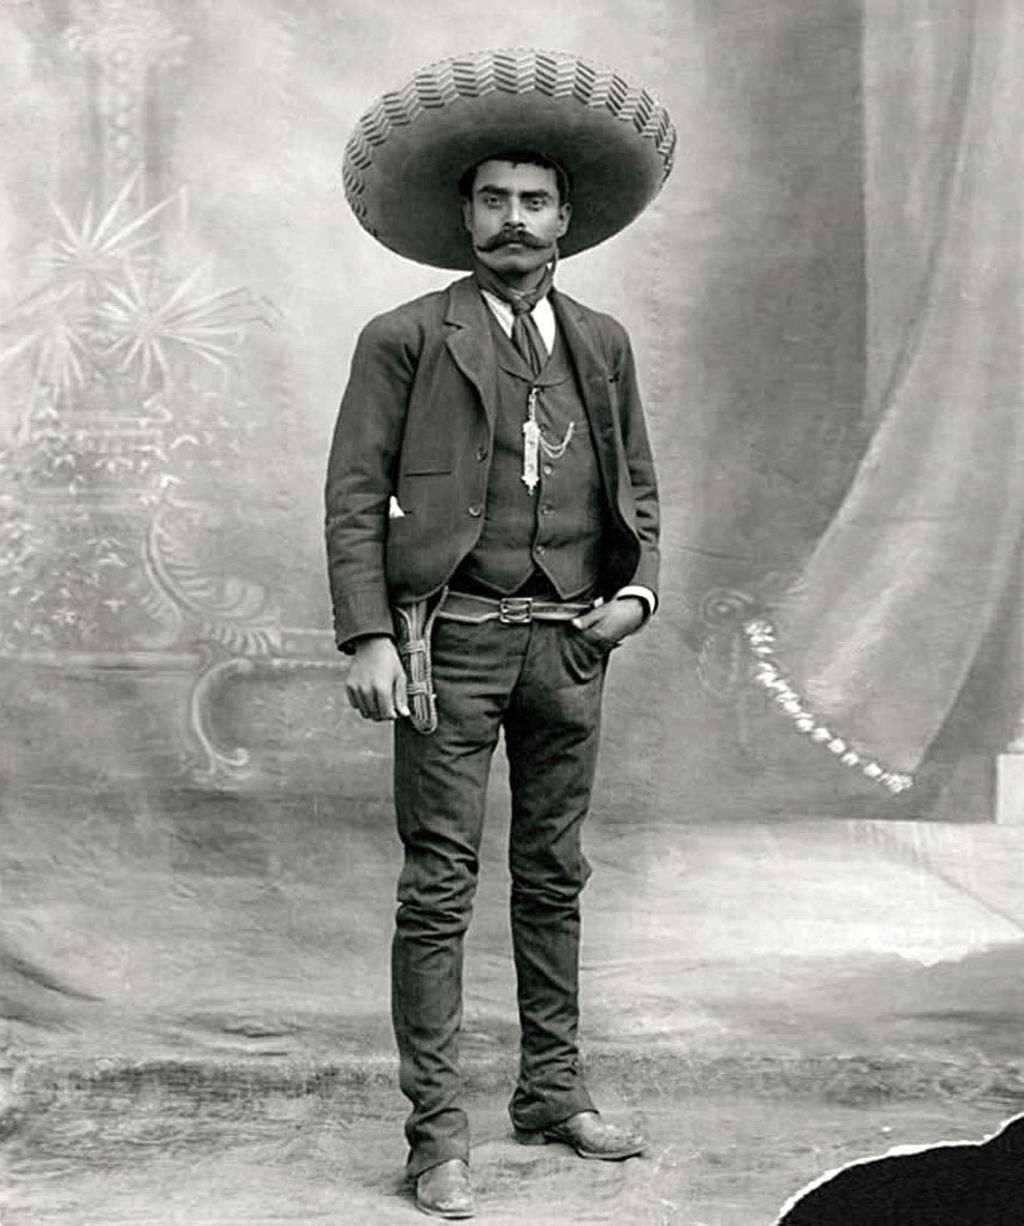  Zapata: uno de los líderes militares y campesinos más importantes de la Revolución mexicana y un símbolo de la resistencia campesina en México.
